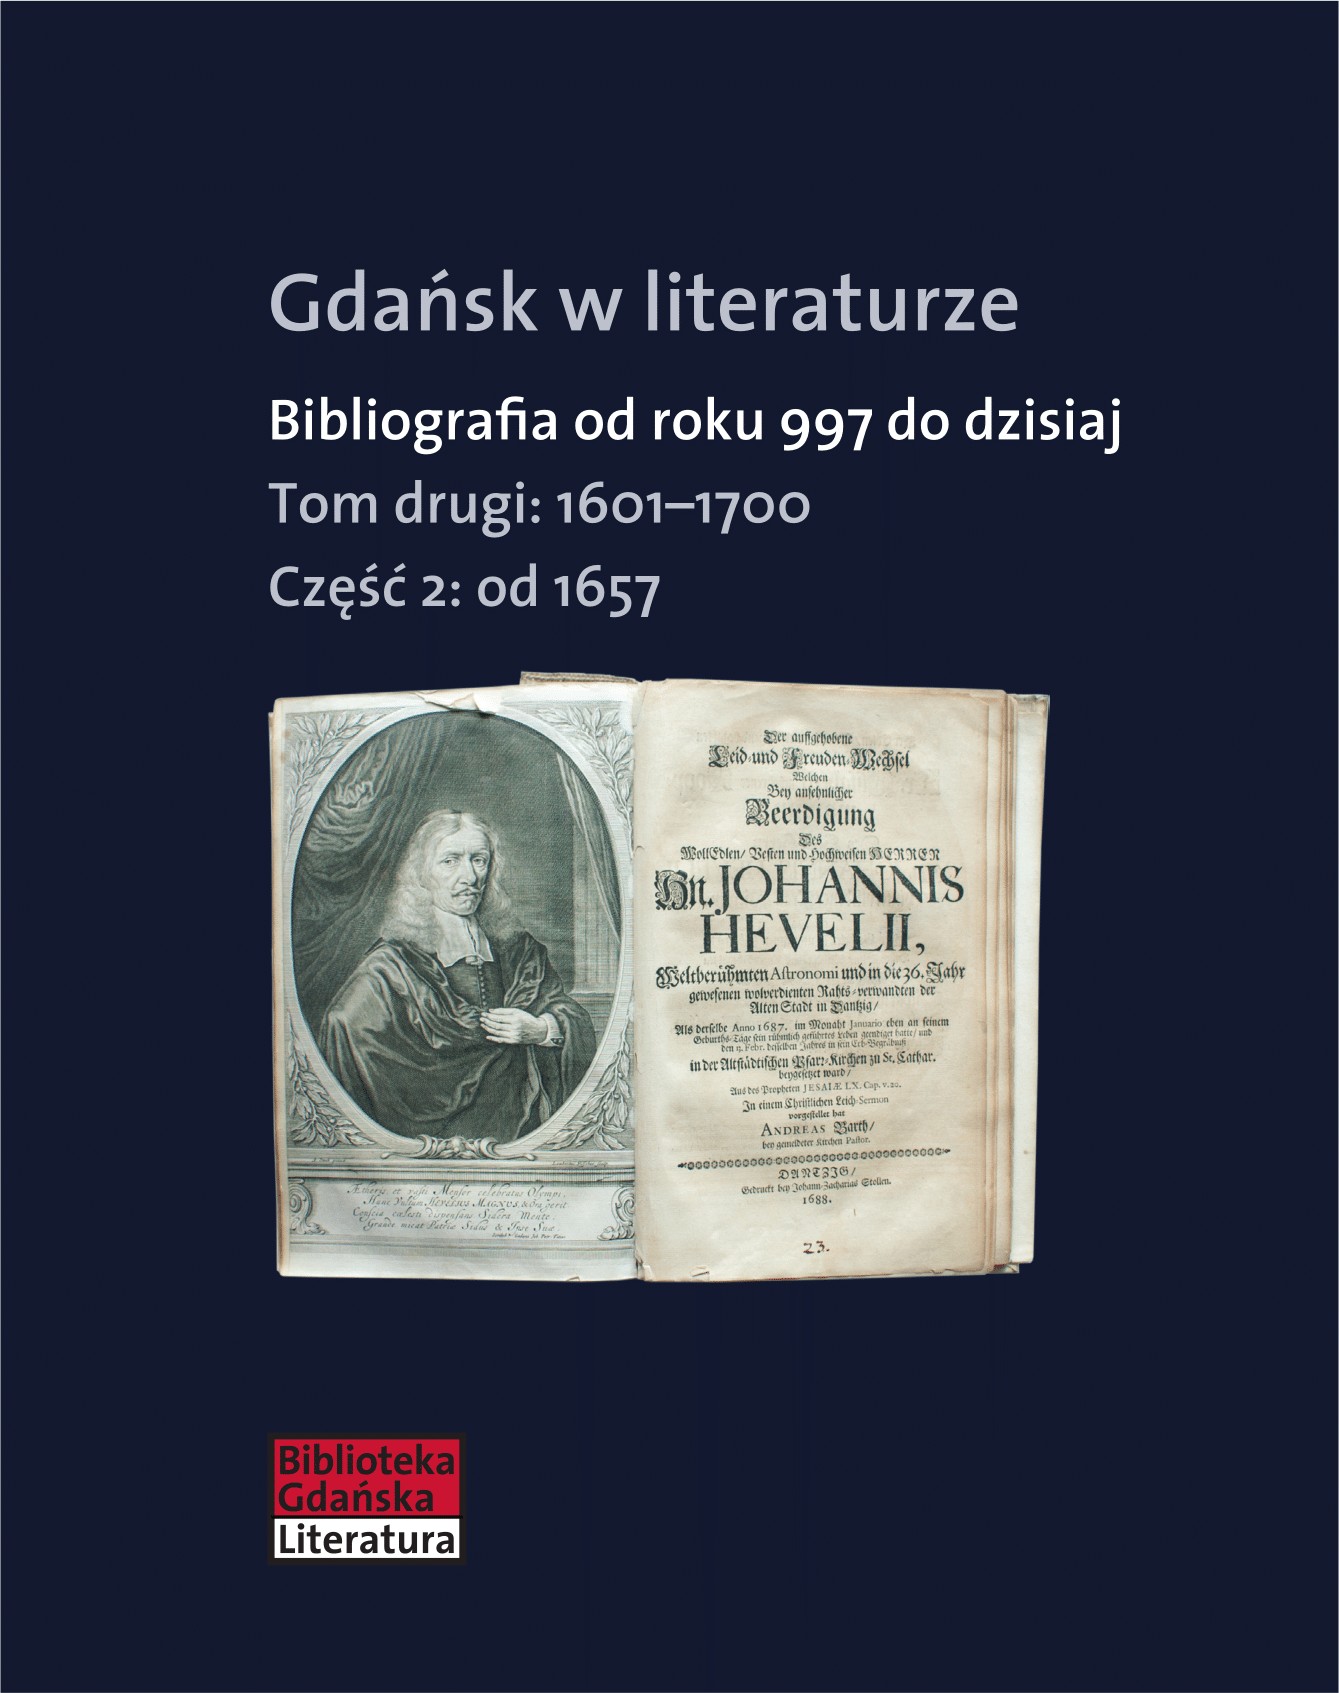 Gdańsk w literaturze. Bibliografia od roku 997 do dzisiaj, t. 2: 1601-1700, cz. 2: od 1657 do 1700